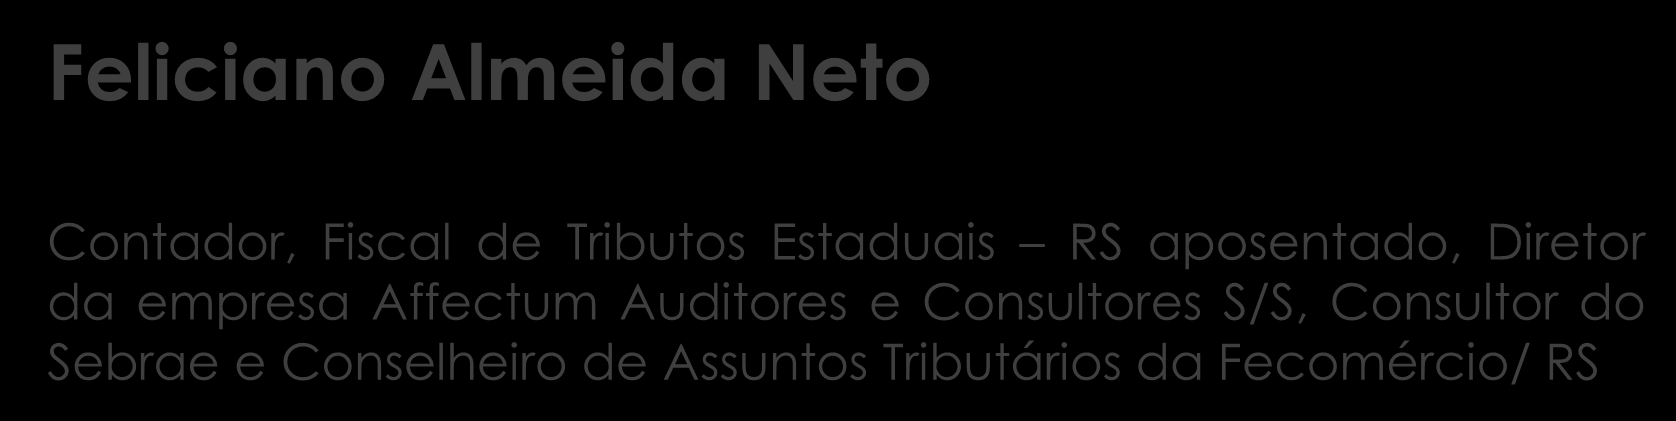 Apresentação Feliciano Almeida Neto Contador, Fiscal de Tributos Estaduais RS aposentado, Diretor da empresa